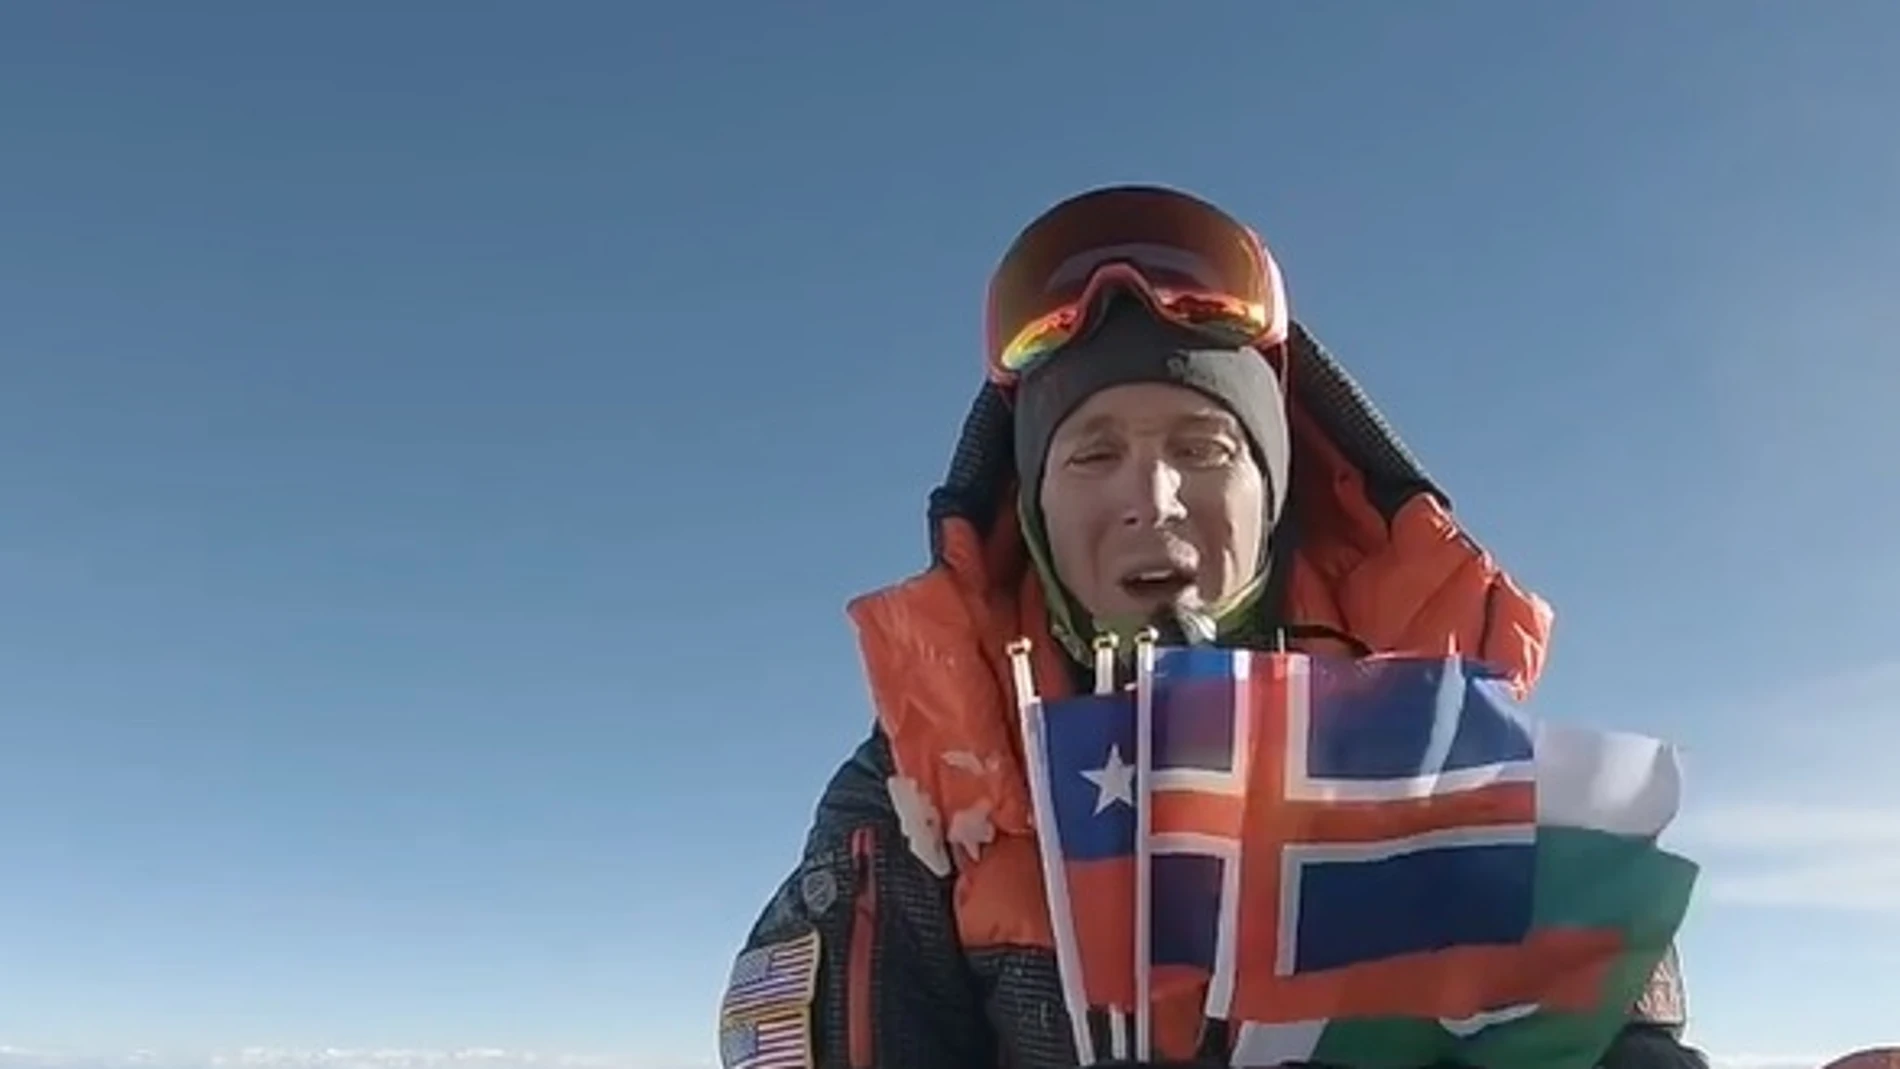 El homenaje de Colin O'Brady en la cima del Everest a los escaladores fallecidos en el K2